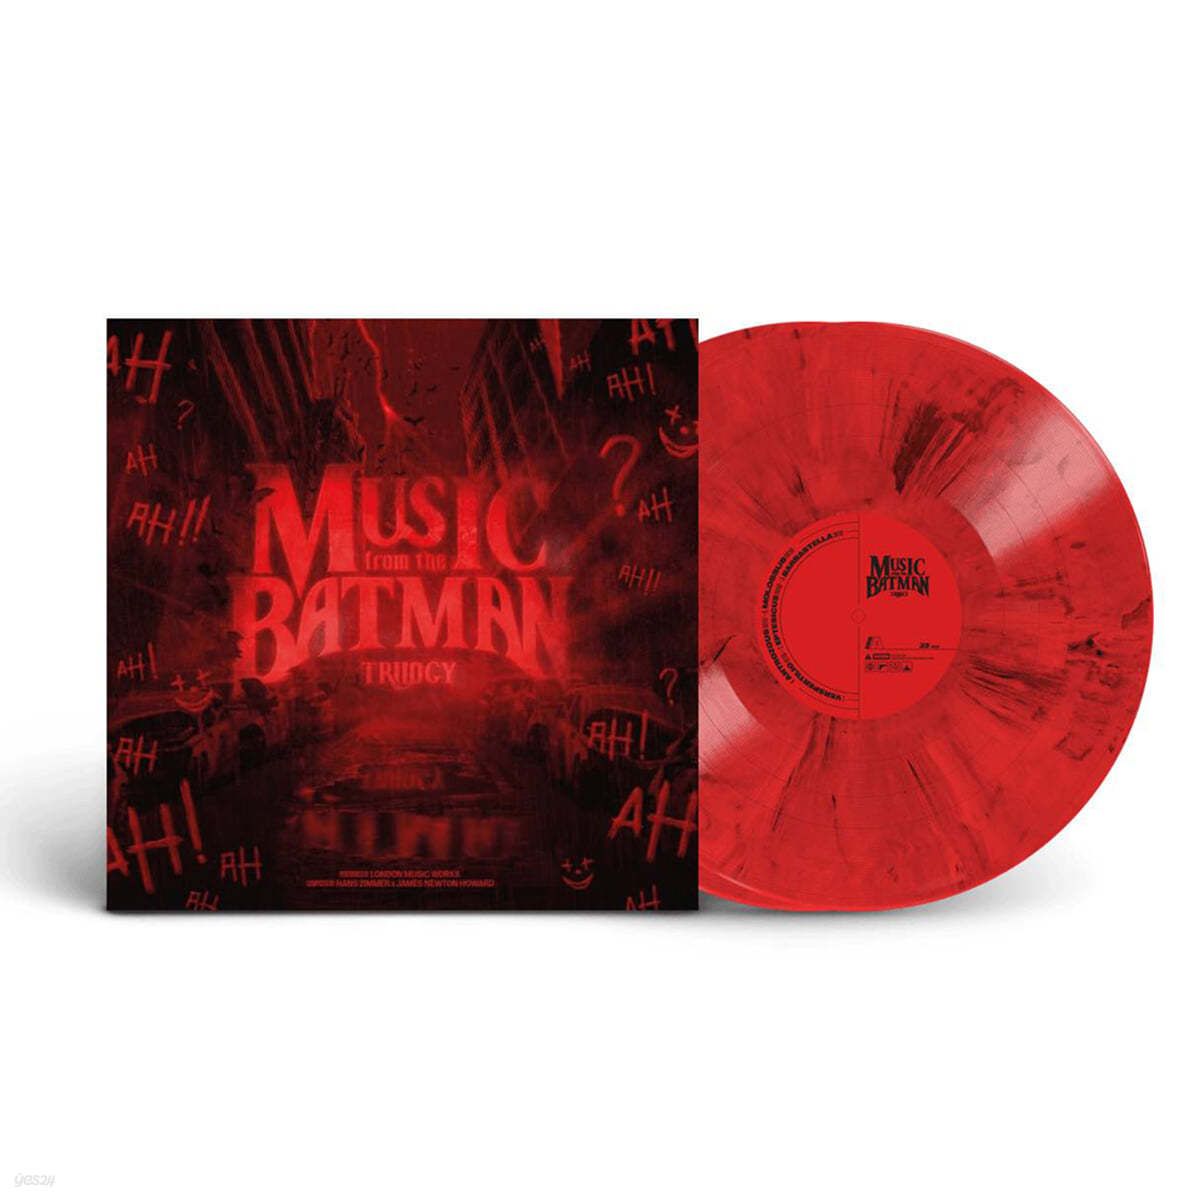 배트맨 영화음악 3부작 베스트 모음집 (Music From The Batman Trilogy by Hans Zimmer &amp; James Newton Howard) [레드 마블 컬러 2LP]